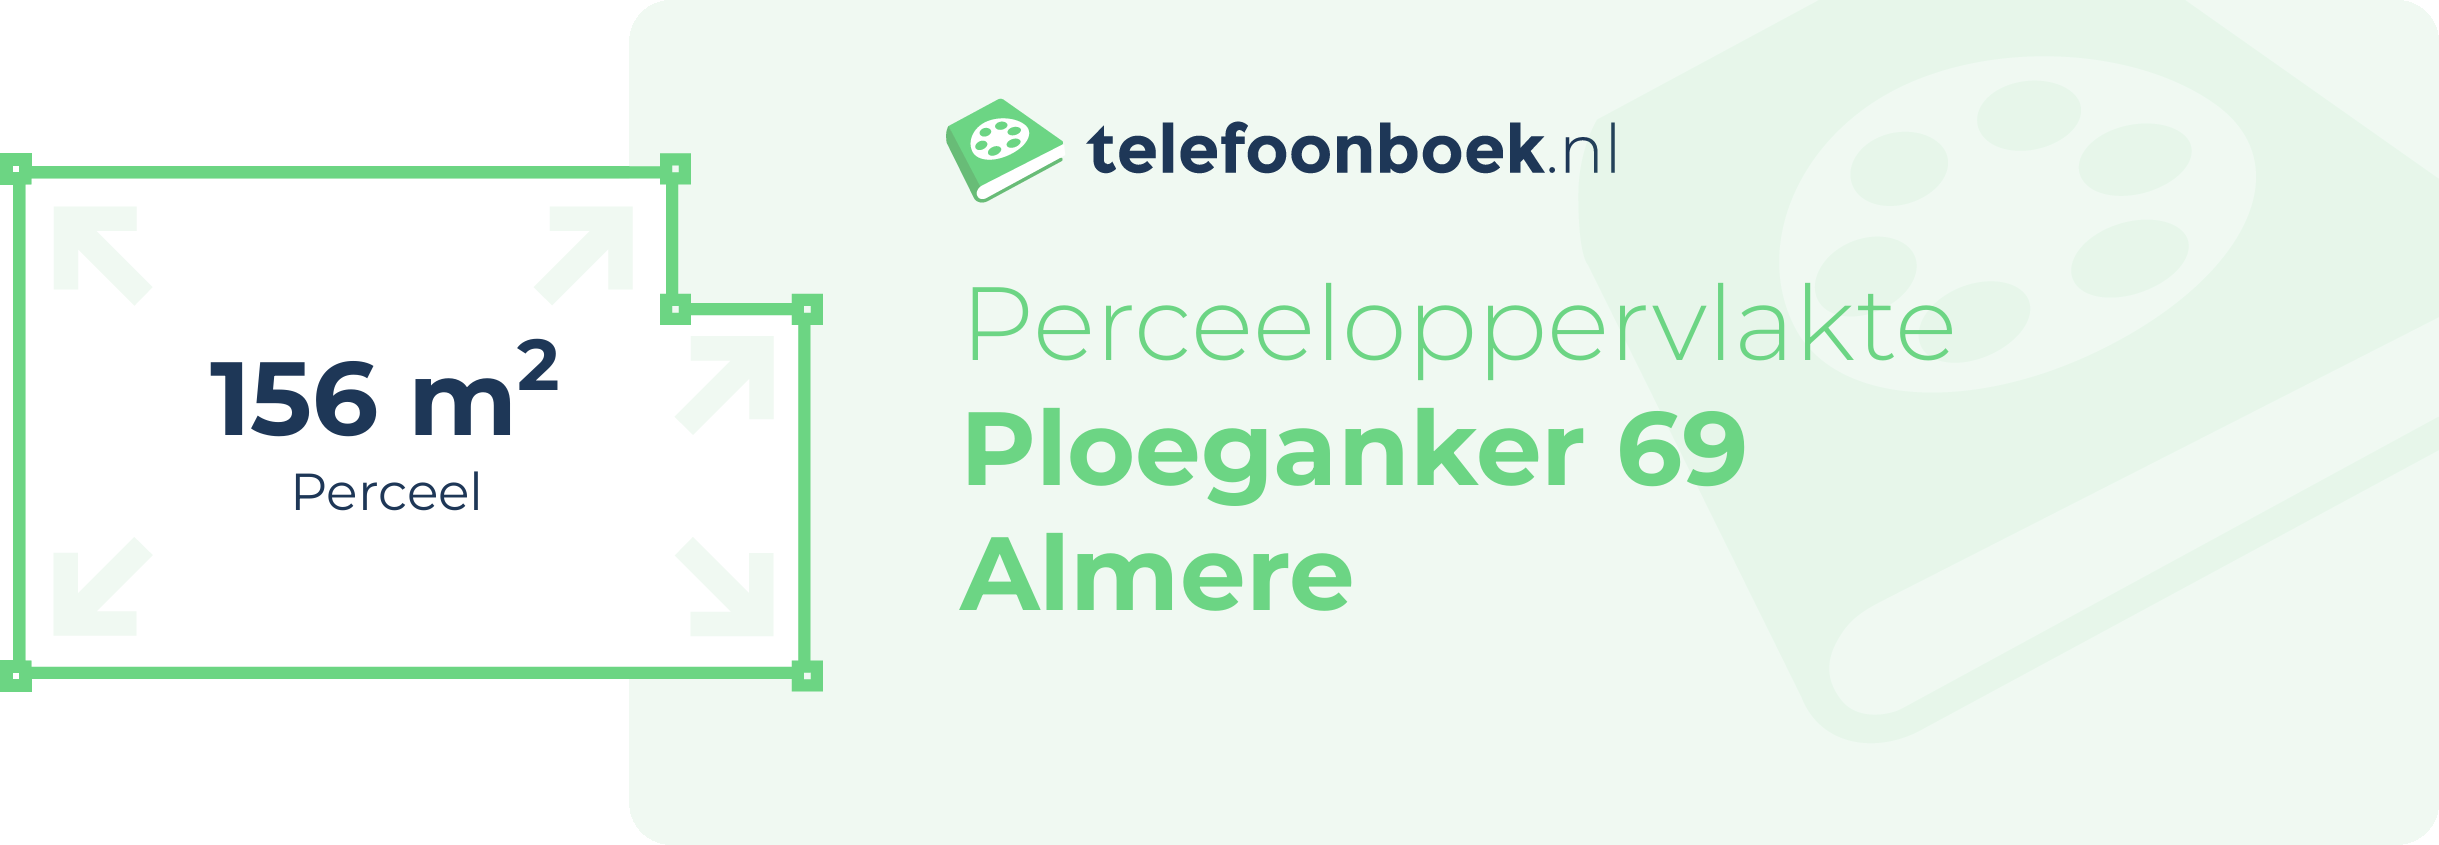 Perceeloppervlakte Ploeganker 69 Almere